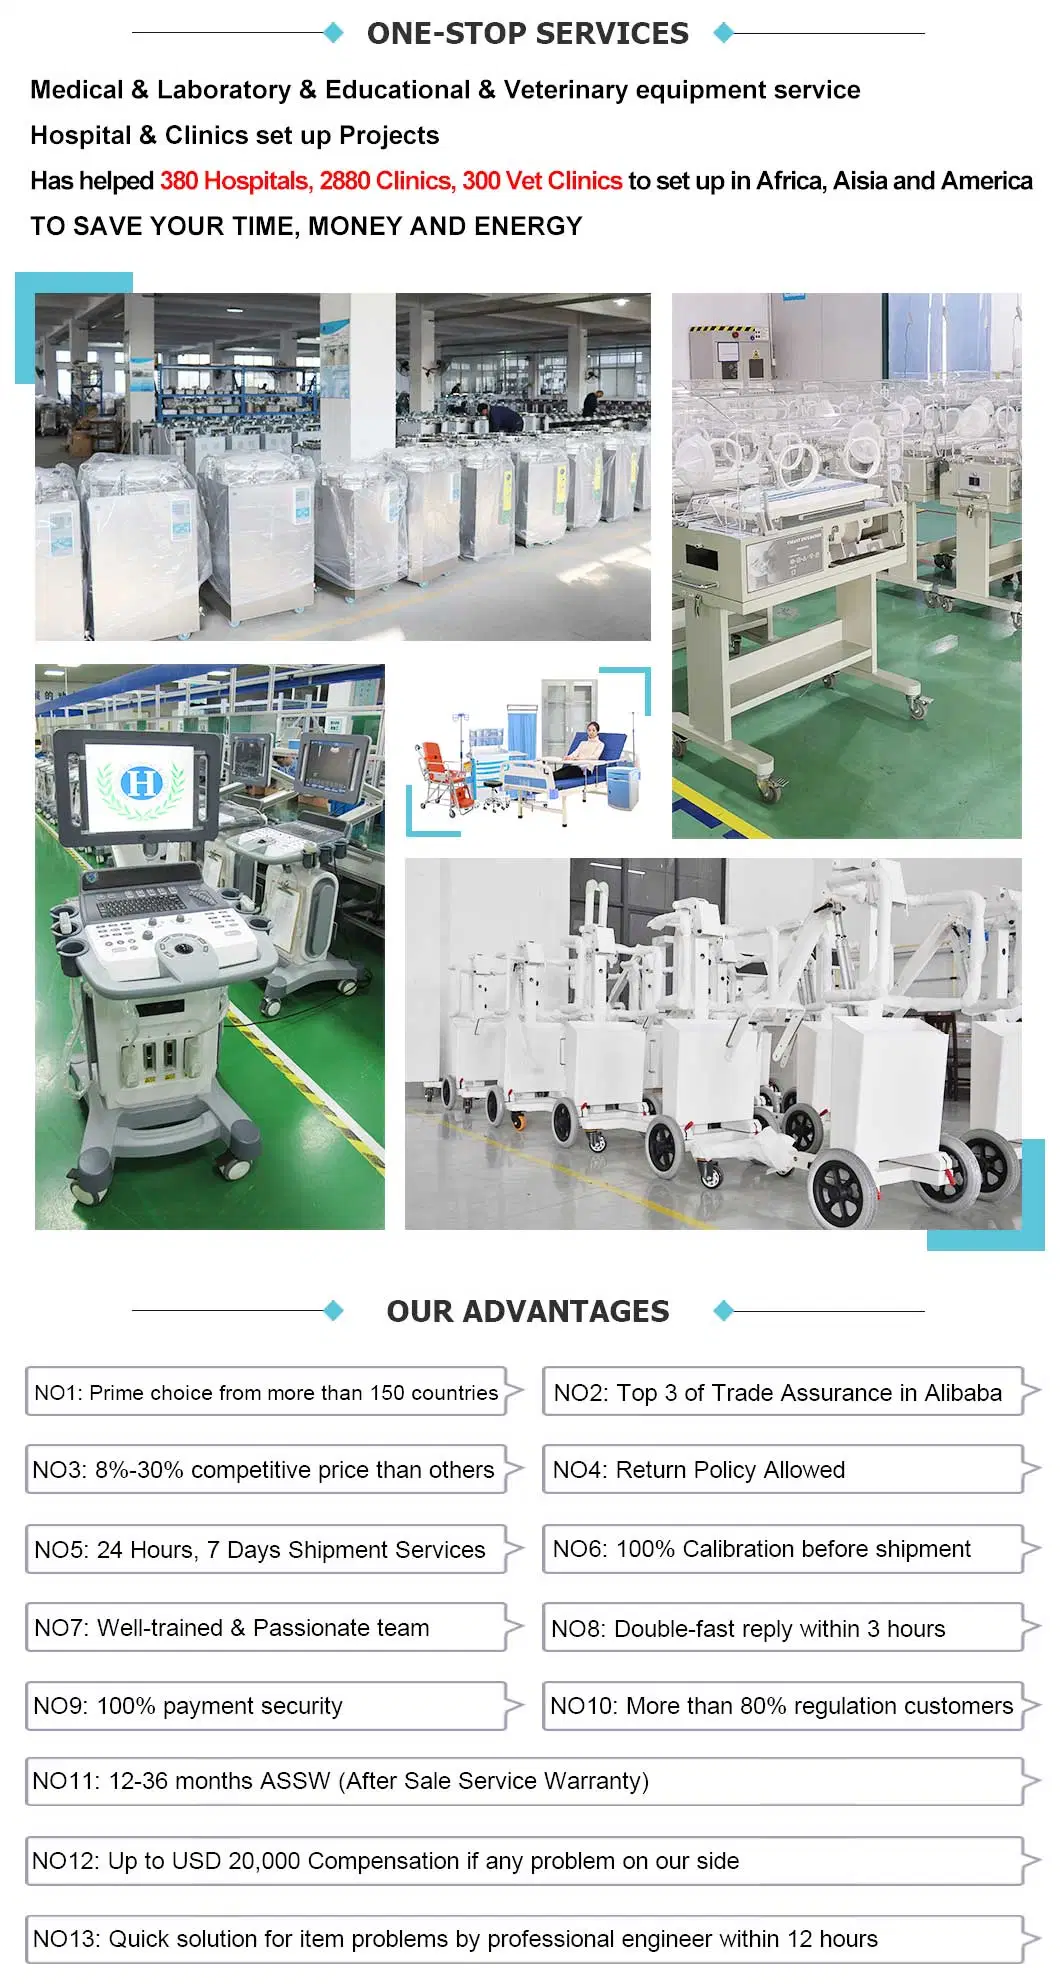 Medical Equipment 50L - 150L Automatic Vertical Pressure Steam Autoclave Sterilizer